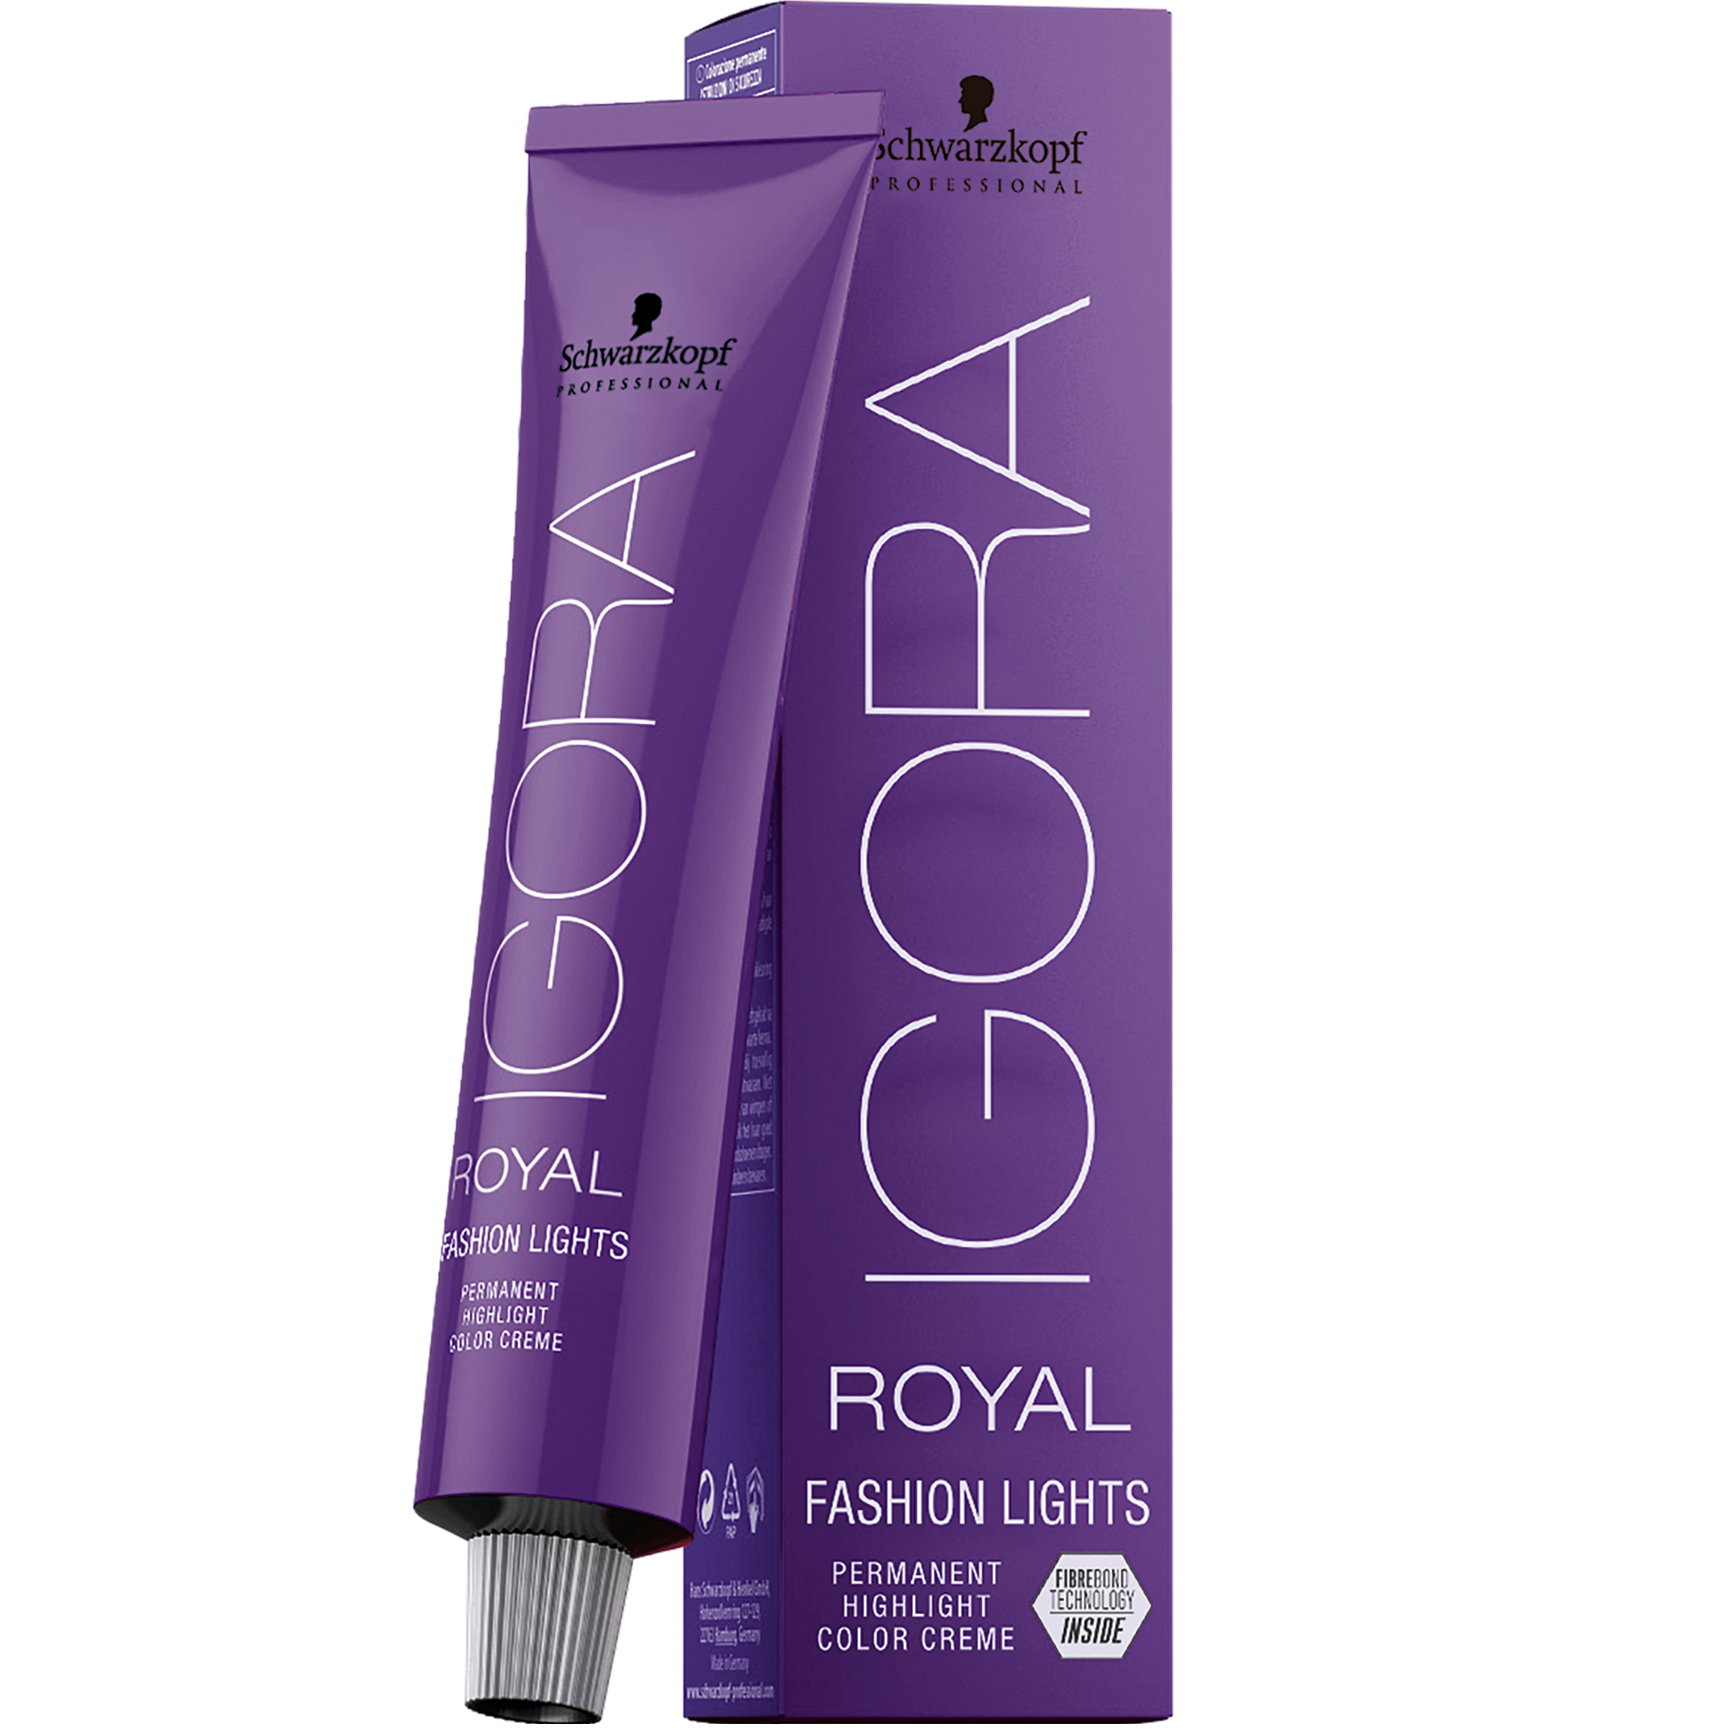 Перманентна крем-фарба для волосся Schwarzkopf Professional Igora Royal Fashion Lights, відтінок L-77 (мідний), 60 мл (2682183) - фото 1